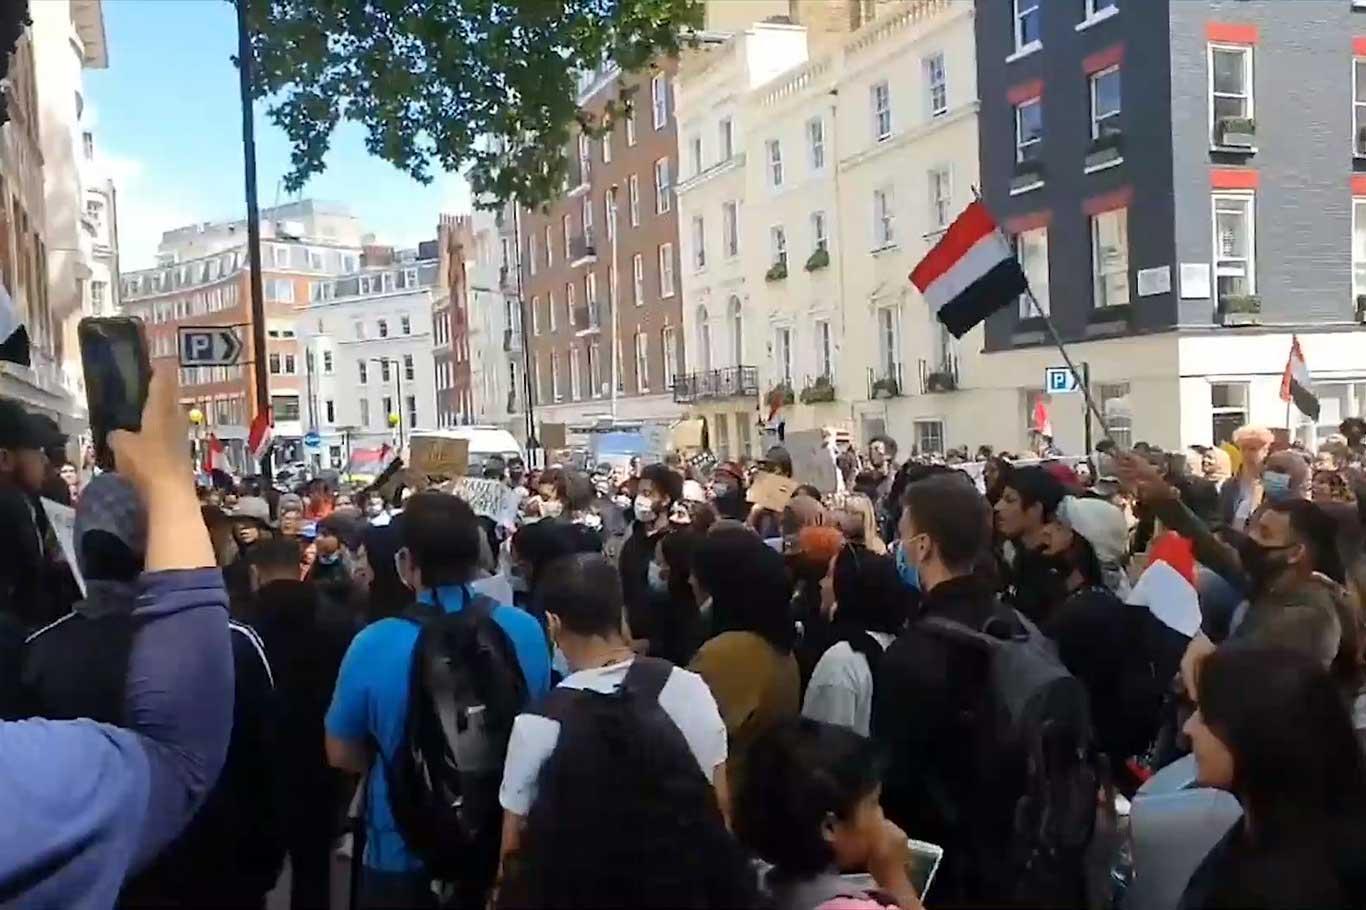 احتجاج في لندن على عدوان التحالف السعودي وحصاره لليمن